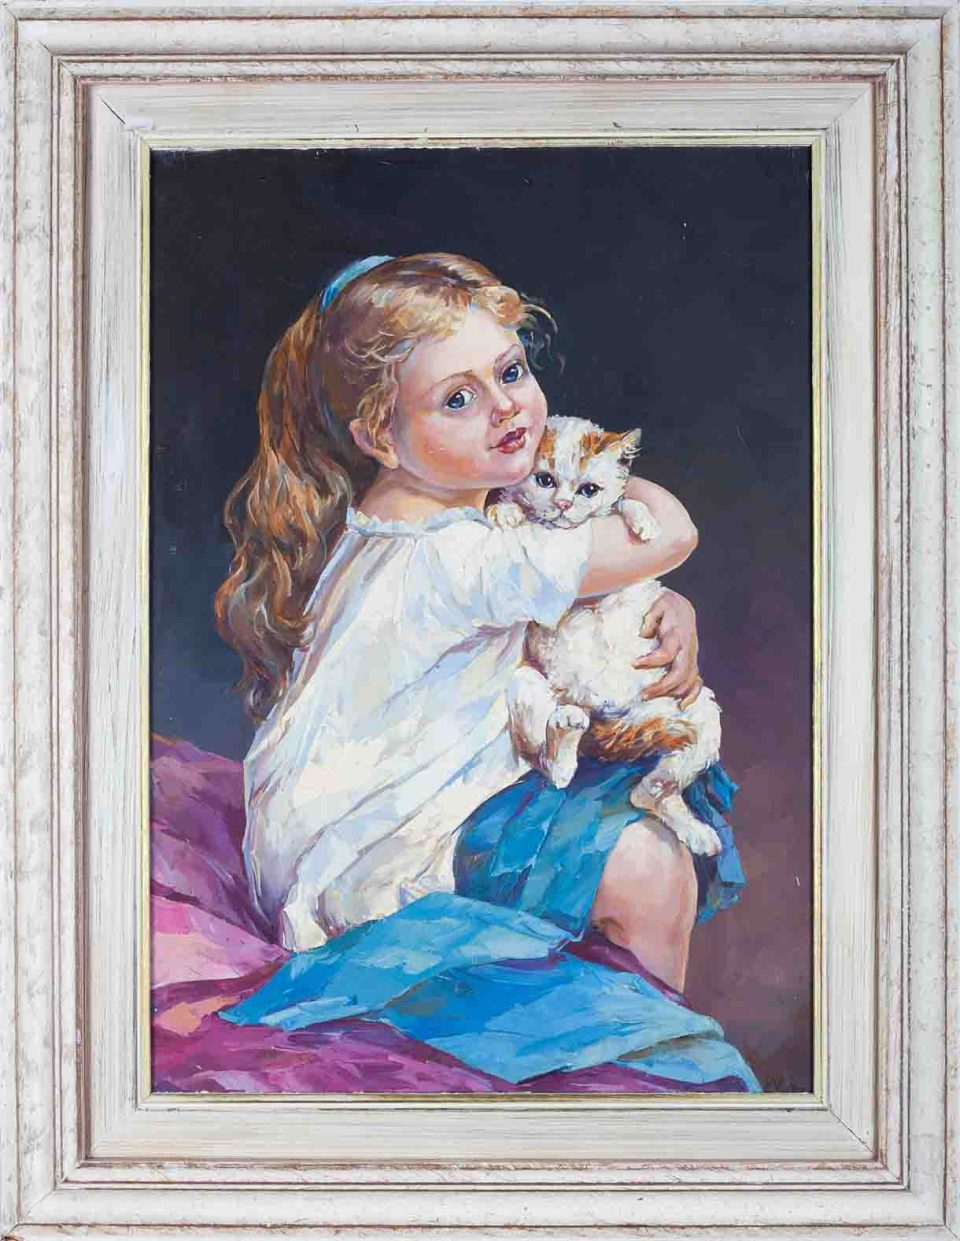 chalatova eleni, oil painting girl, little girl hug its pet, hug little cat, xalatova eleni elaiografia se kamva